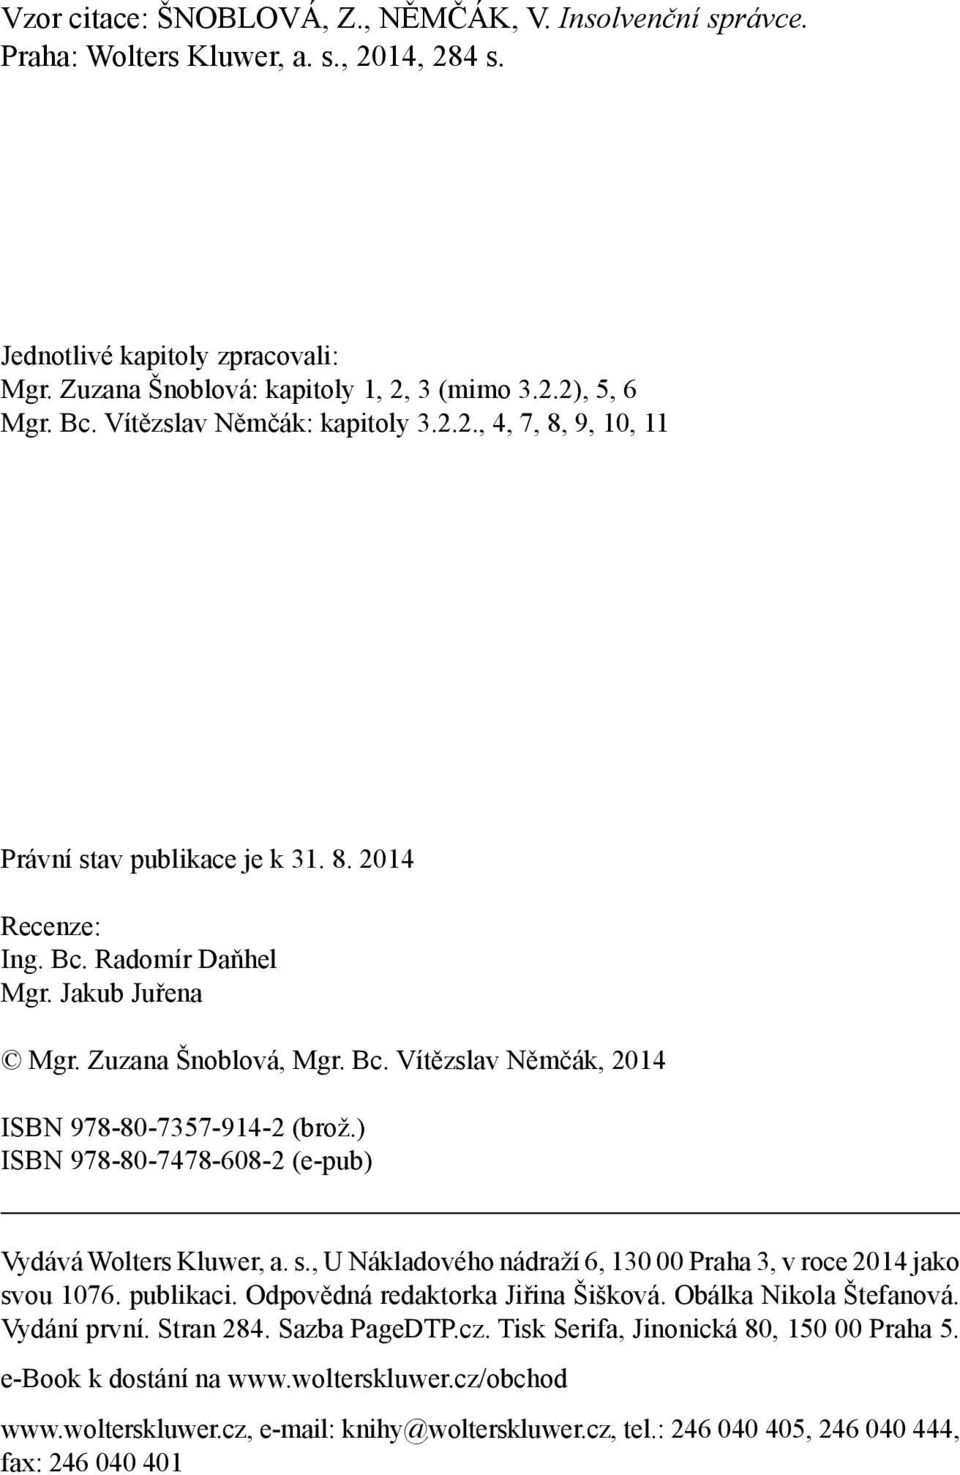 ) ISBN 978-80-7478-608-2 (e-pub) Vydává Wolters Kluwer, a. s., U Nákladového nádraží 6, 130 00 Praha 3, v roce 2014 jako svou 1076. publikaci. Odpovědná redaktorka Jiřina Šišková.